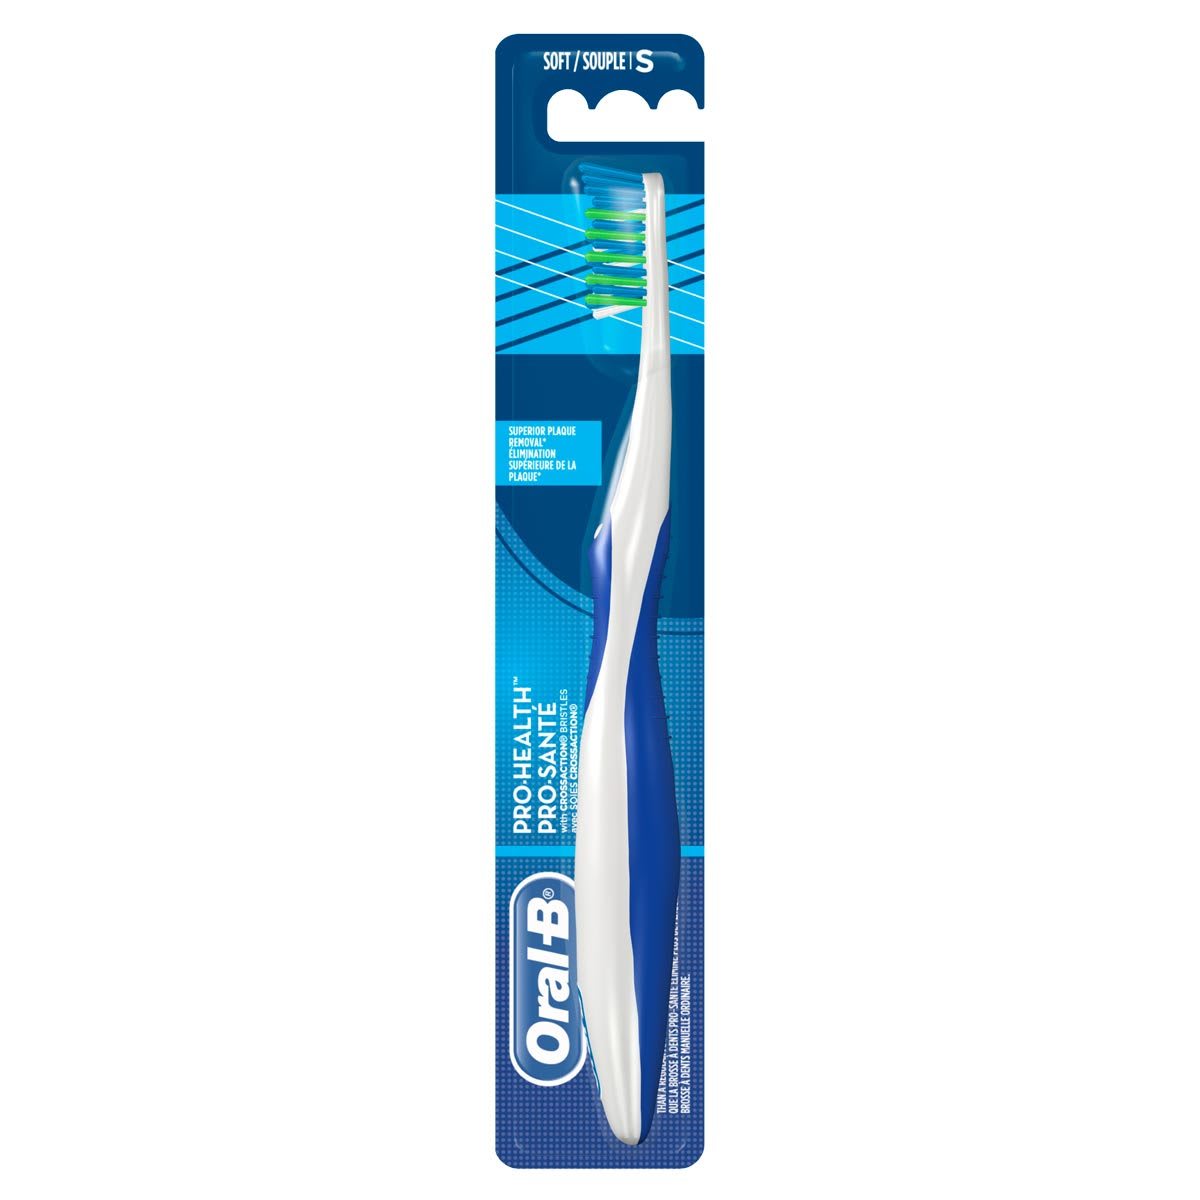 Garder une bonne hygiène buccale avec une brosse à dents manuelle